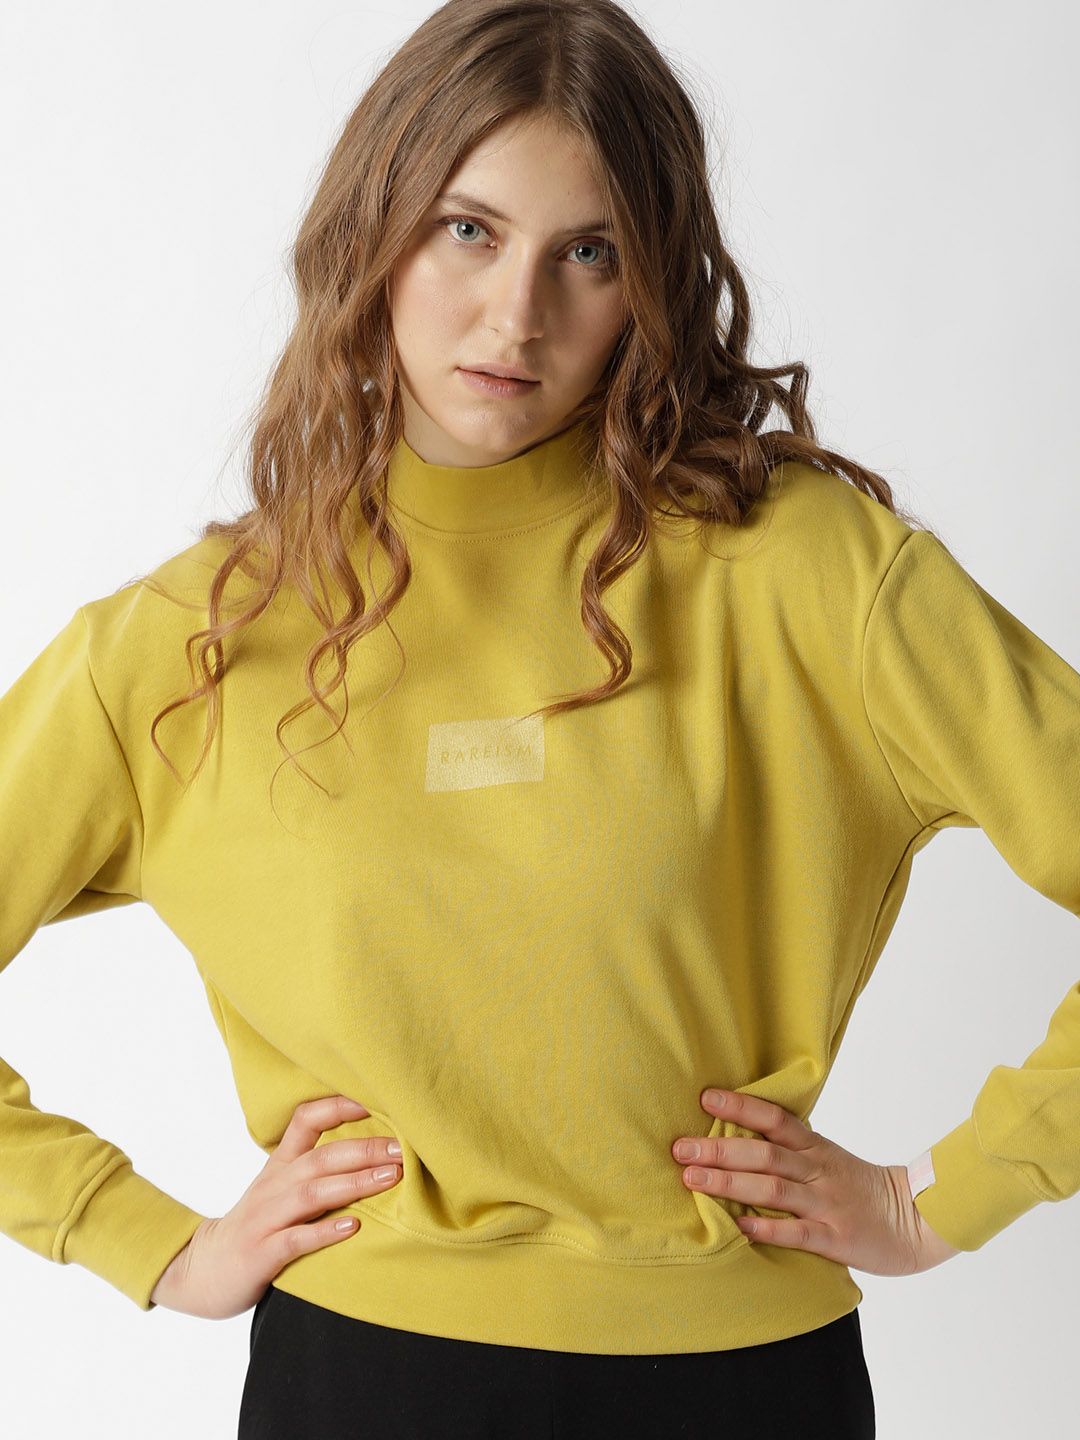 RAREISM Women Yellow Sweatshirt Price in India